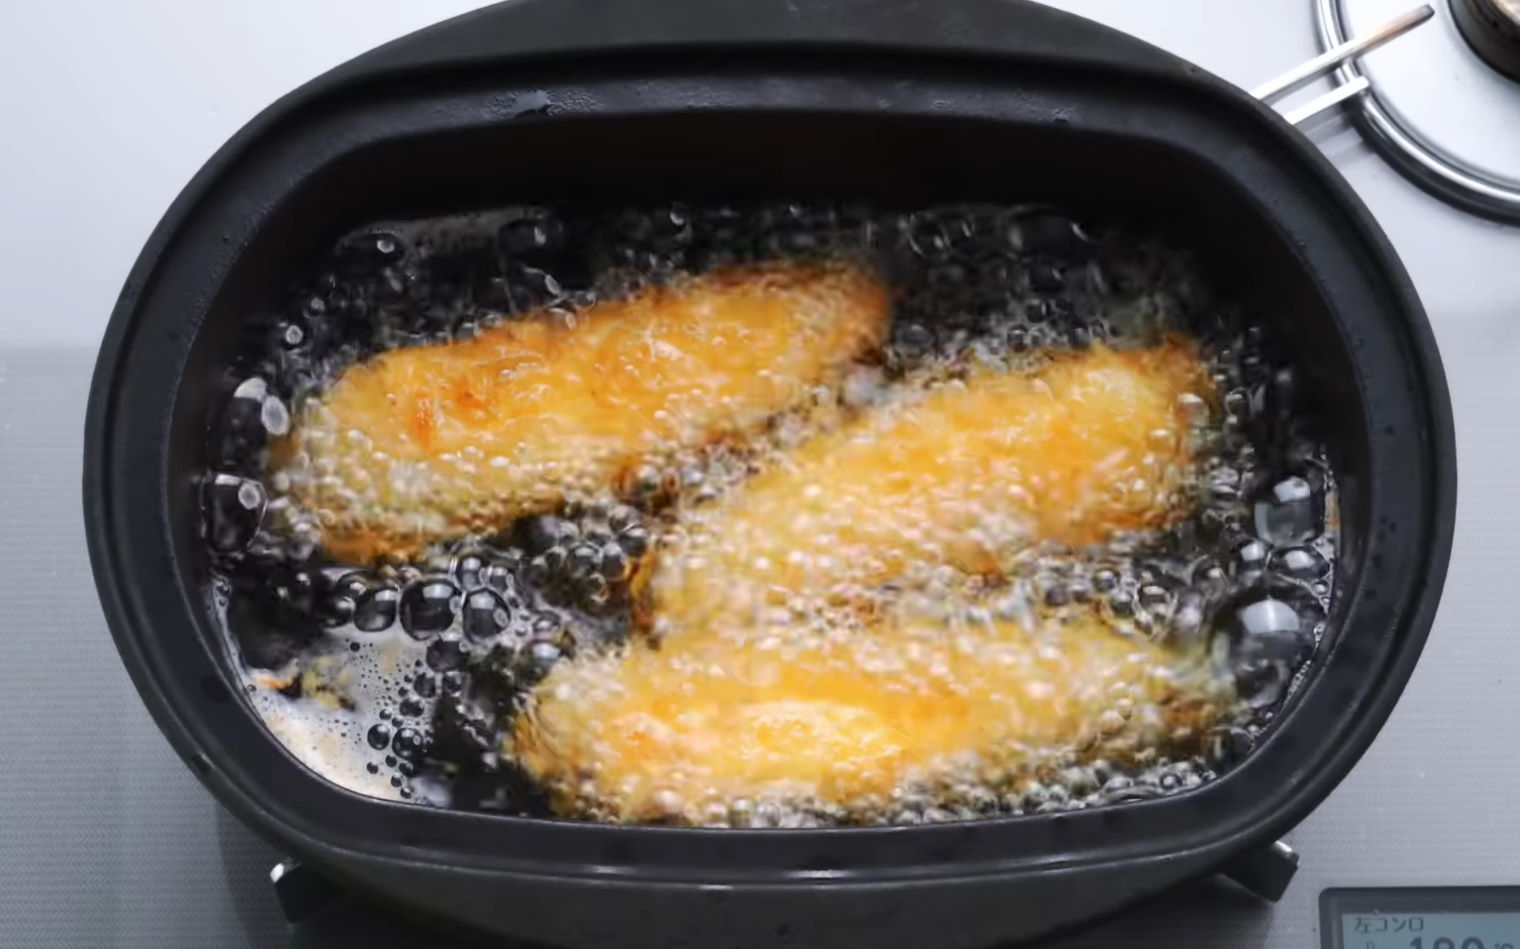 Tiras de pechuga de pollo rebozadas con panko friéndose a 180 grados